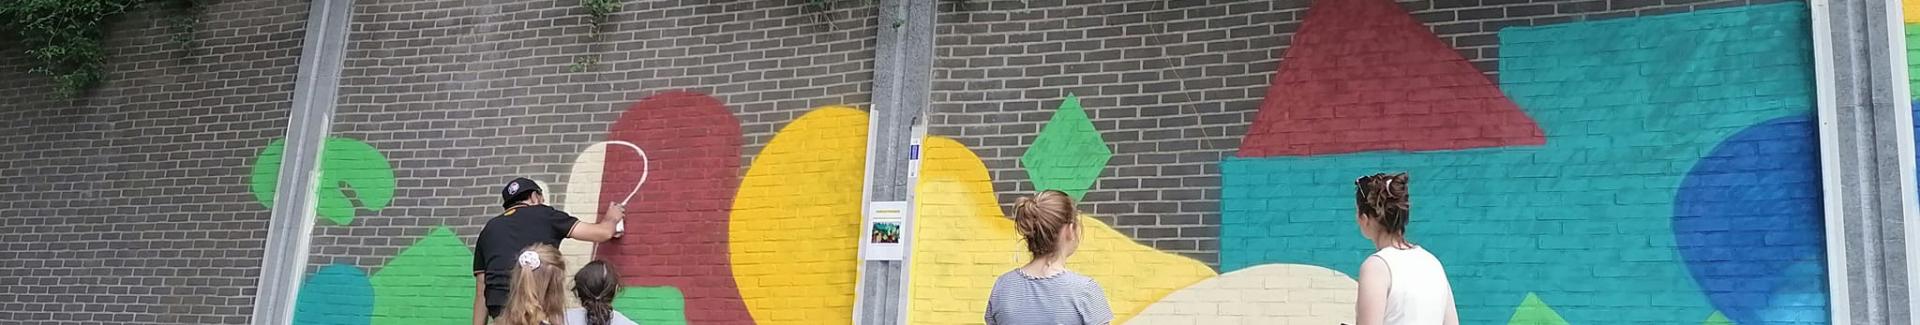 Banner steun voor creatie - Ukkelaars aan het schilderen op straat